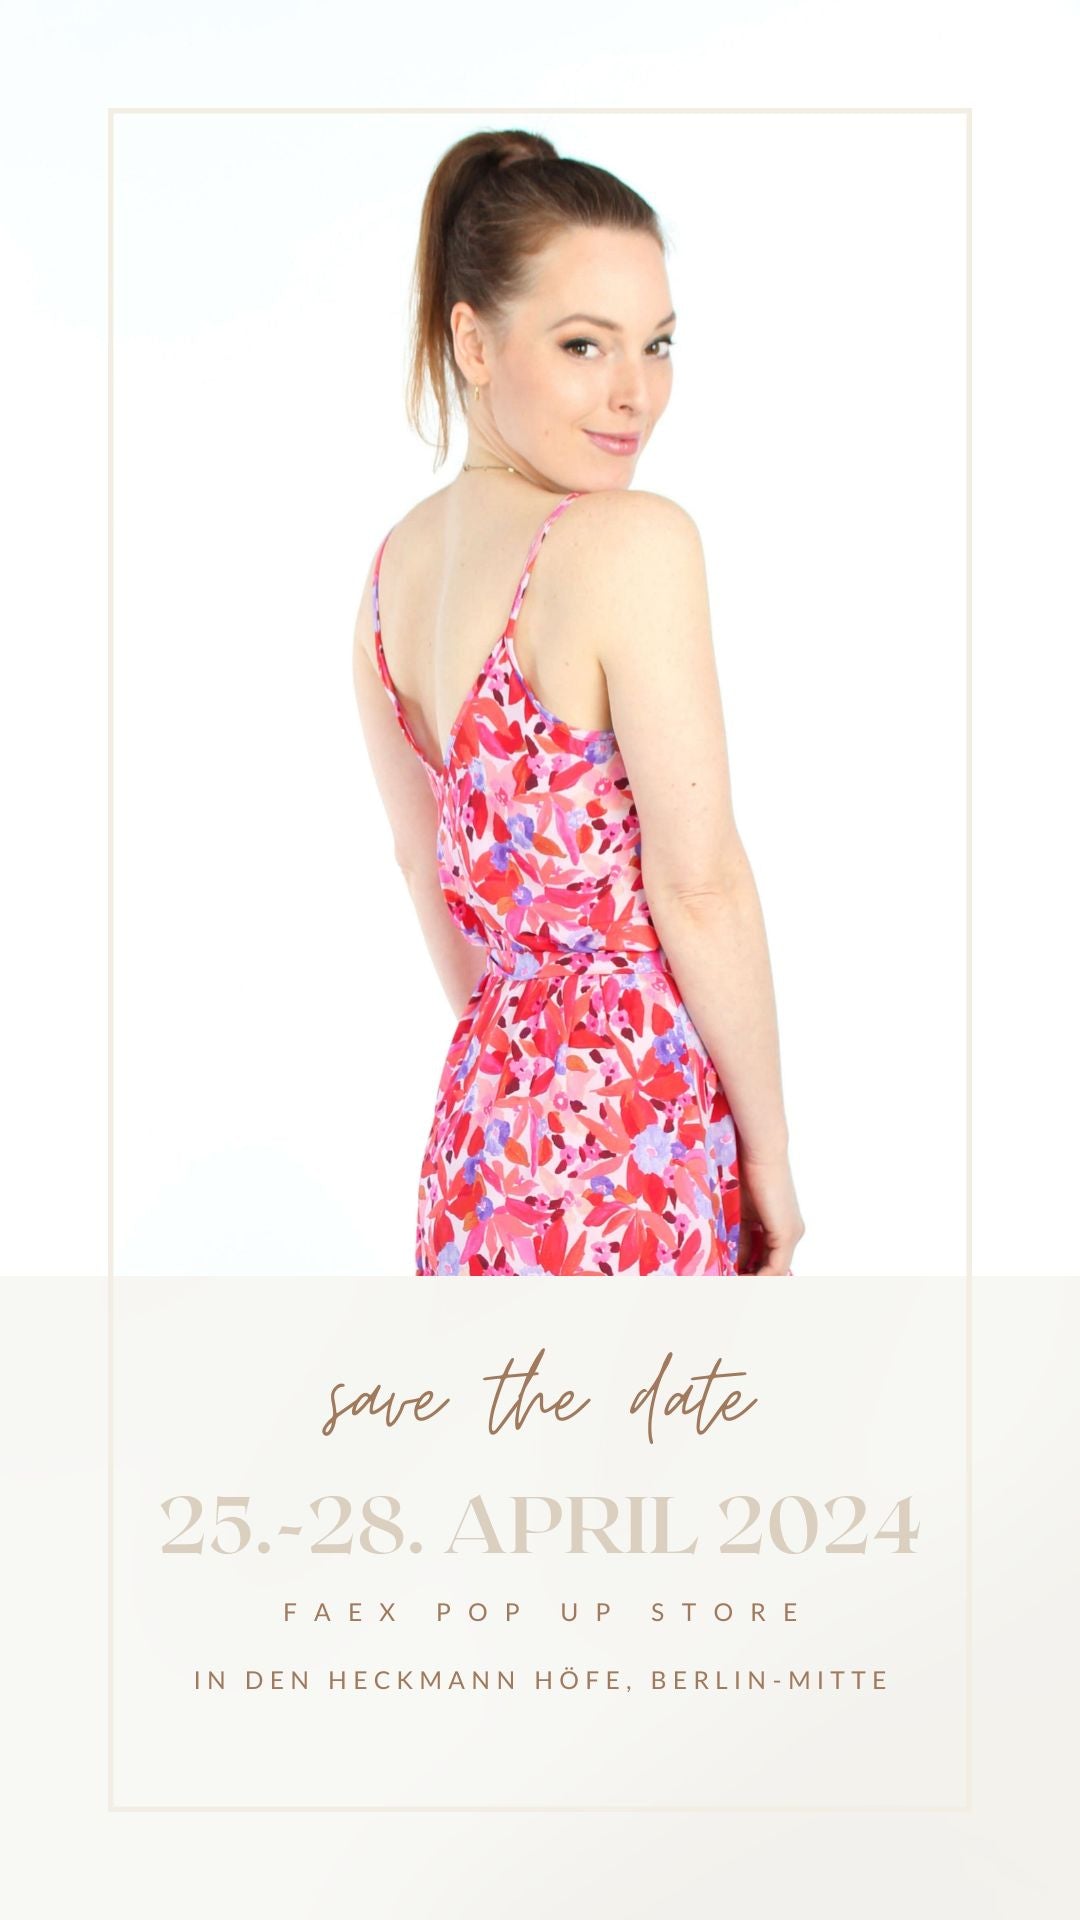 Save the date Banner von LA.LUKA Berlin für den FAEX Pop up store mit Model in einem geblümten Sommerkleid.